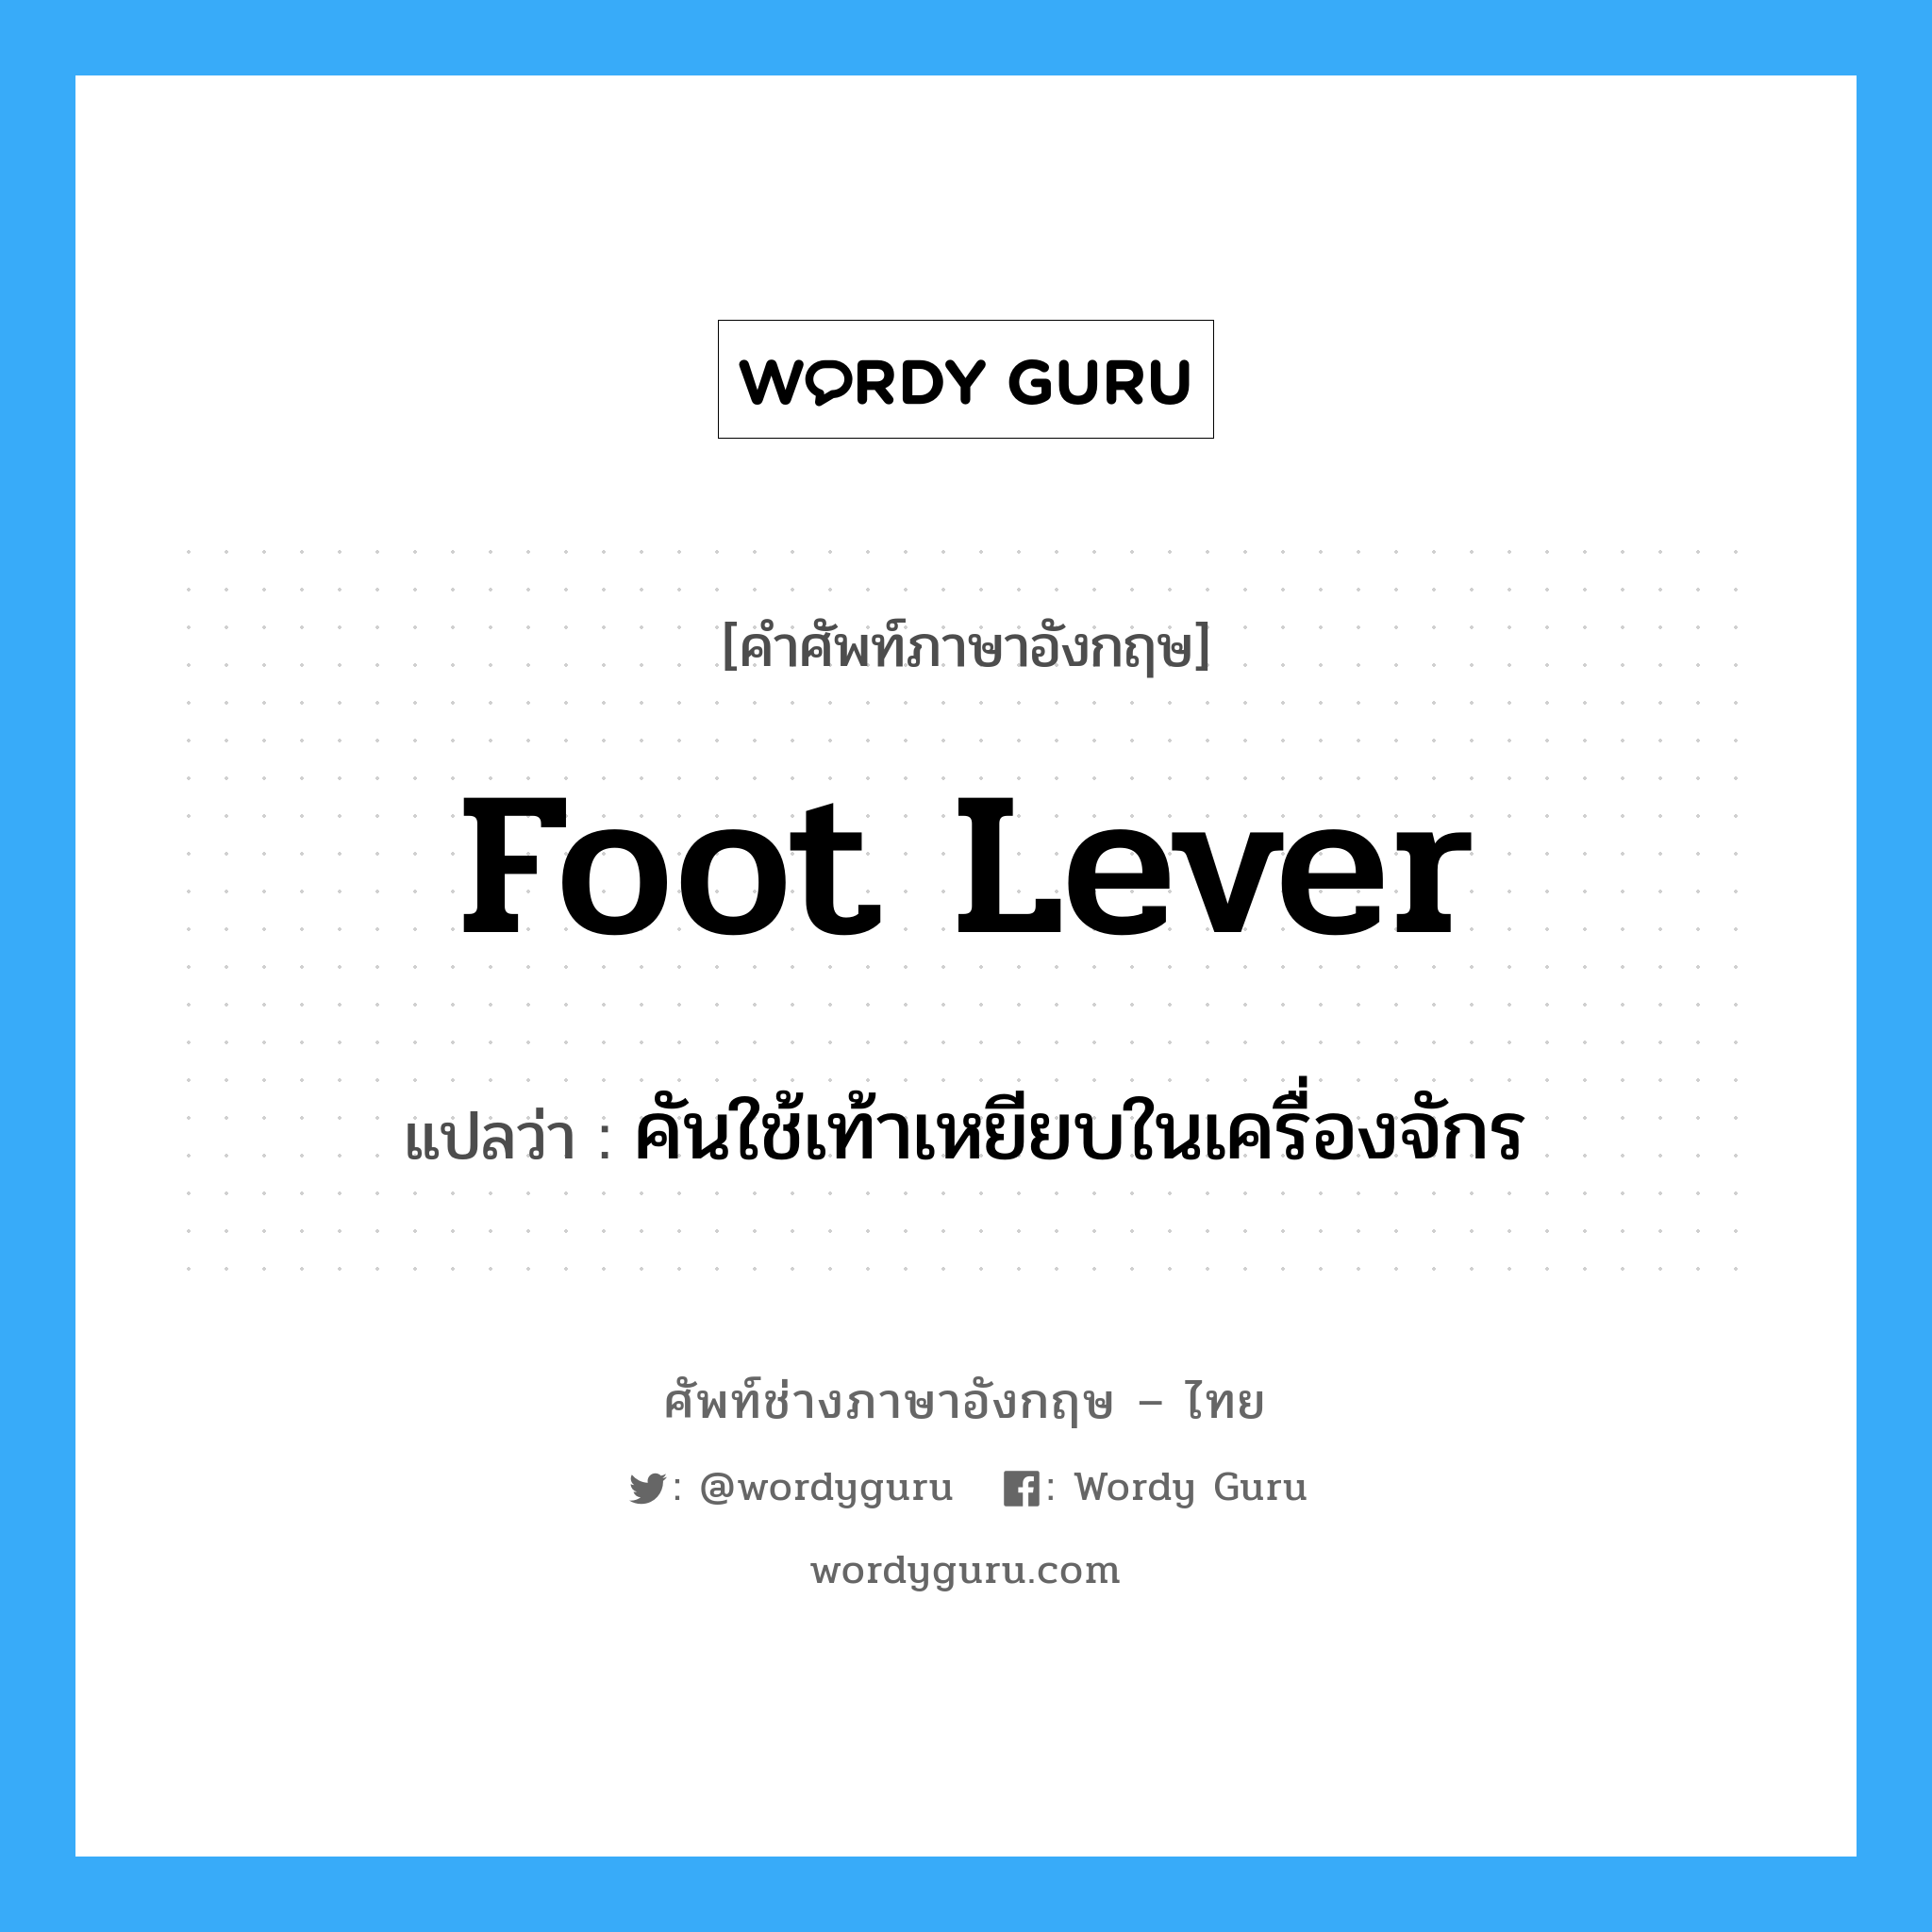 foot lever แปลว่า?, คำศัพท์ช่างภาษาอังกฤษ - ไทย foot lever คำศัพท์ภาษาอังกฤษ foot lever แปลว่า คันใช้เท้าเหยียบในเครื่องจักร